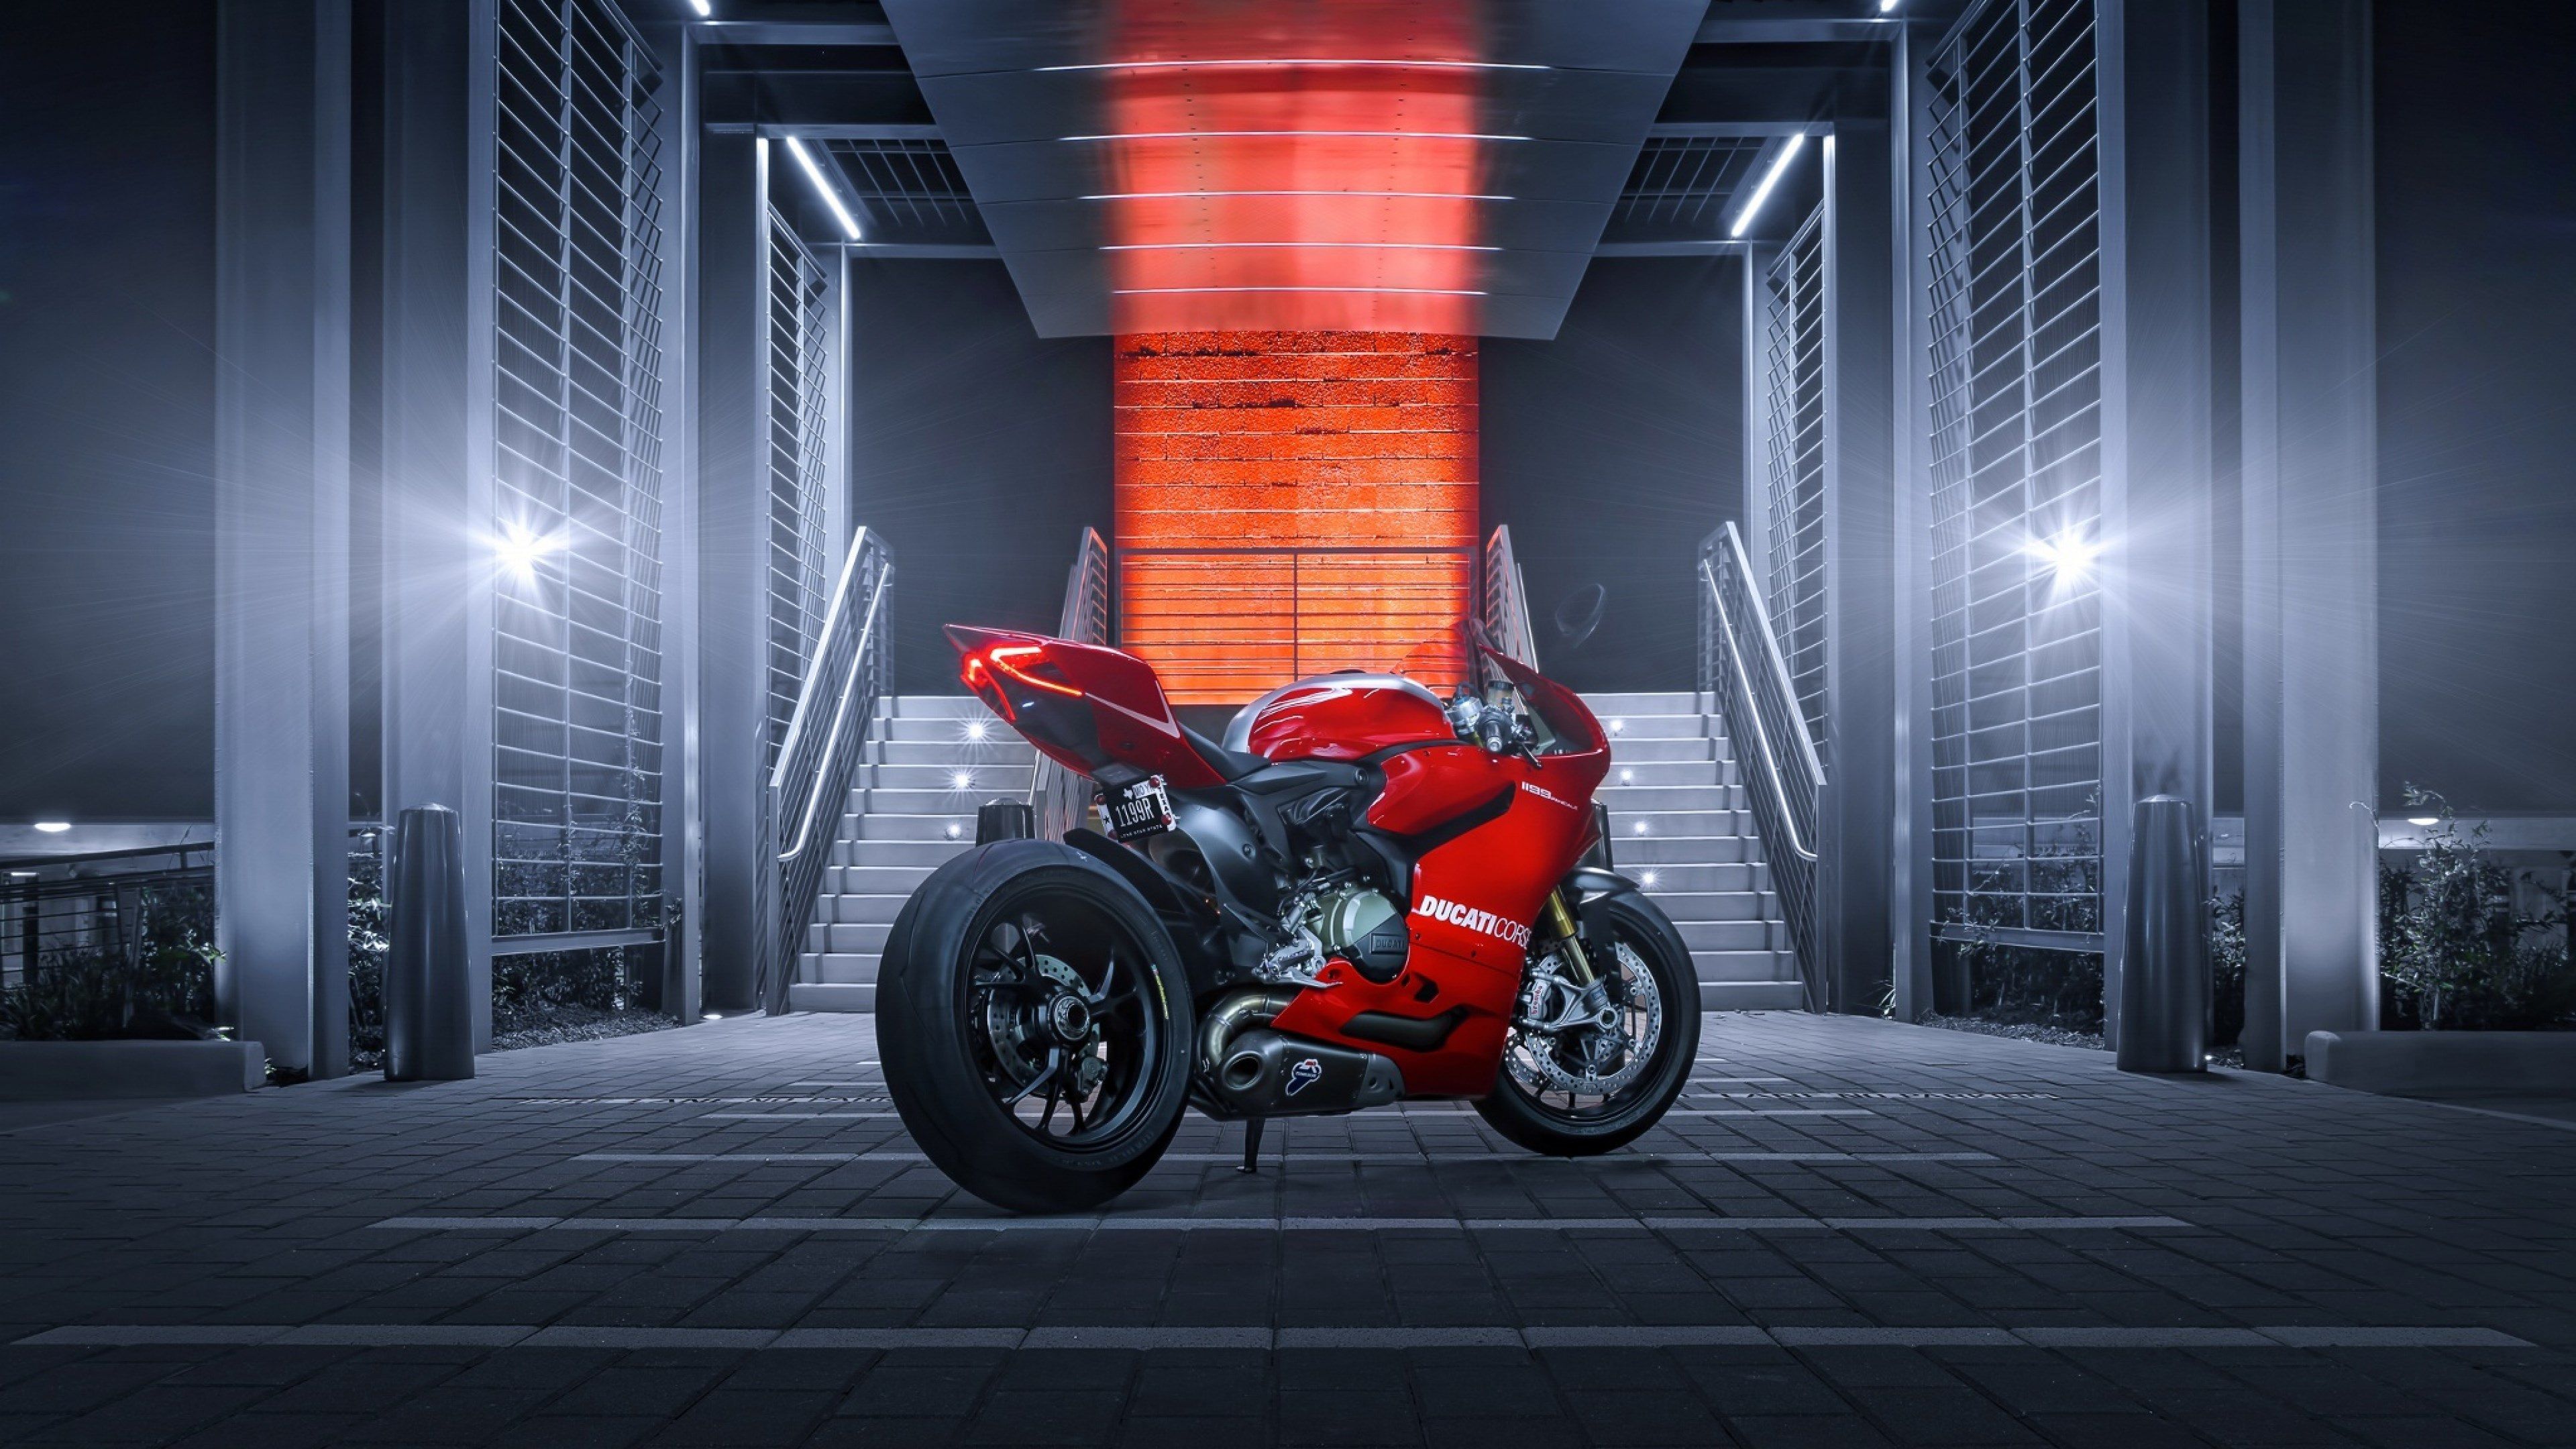 Hình nền Moto 4K là lựa chọn hoàn hảo cho bất kỳ ai đam mê xe mô tô. Chắc chắn bạn sẽ rất thích những bức ảnh đẹp và chất lượng cao mà chúng tôi cung cấp. Hãy truy cập trang web của chúng tôi và trang trí máy tính của bạn một cách độc đáo và đẹp mắt hơn.